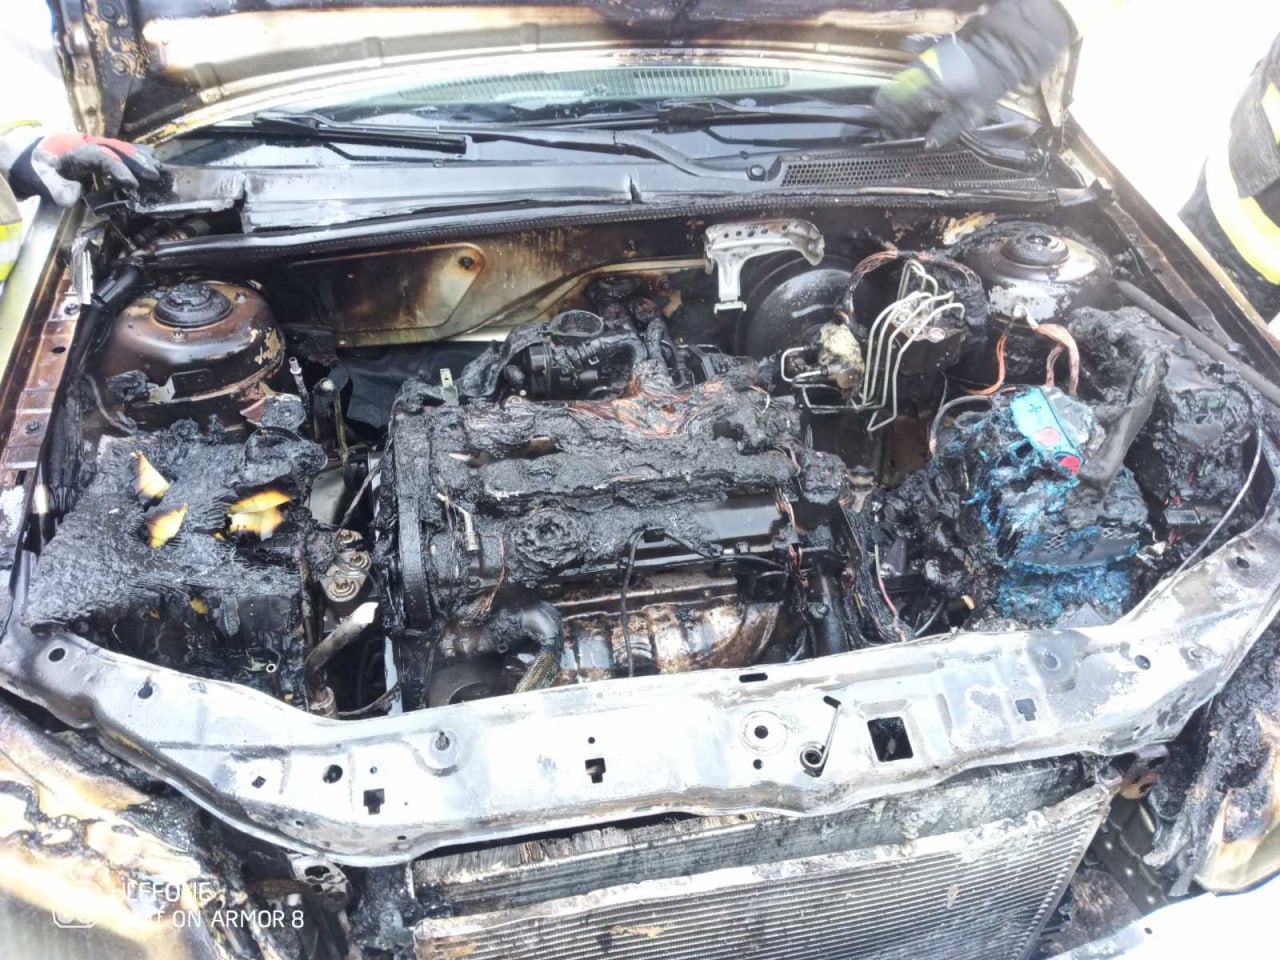 (ФОТО) В центре Кишинева загорелся автомобиль